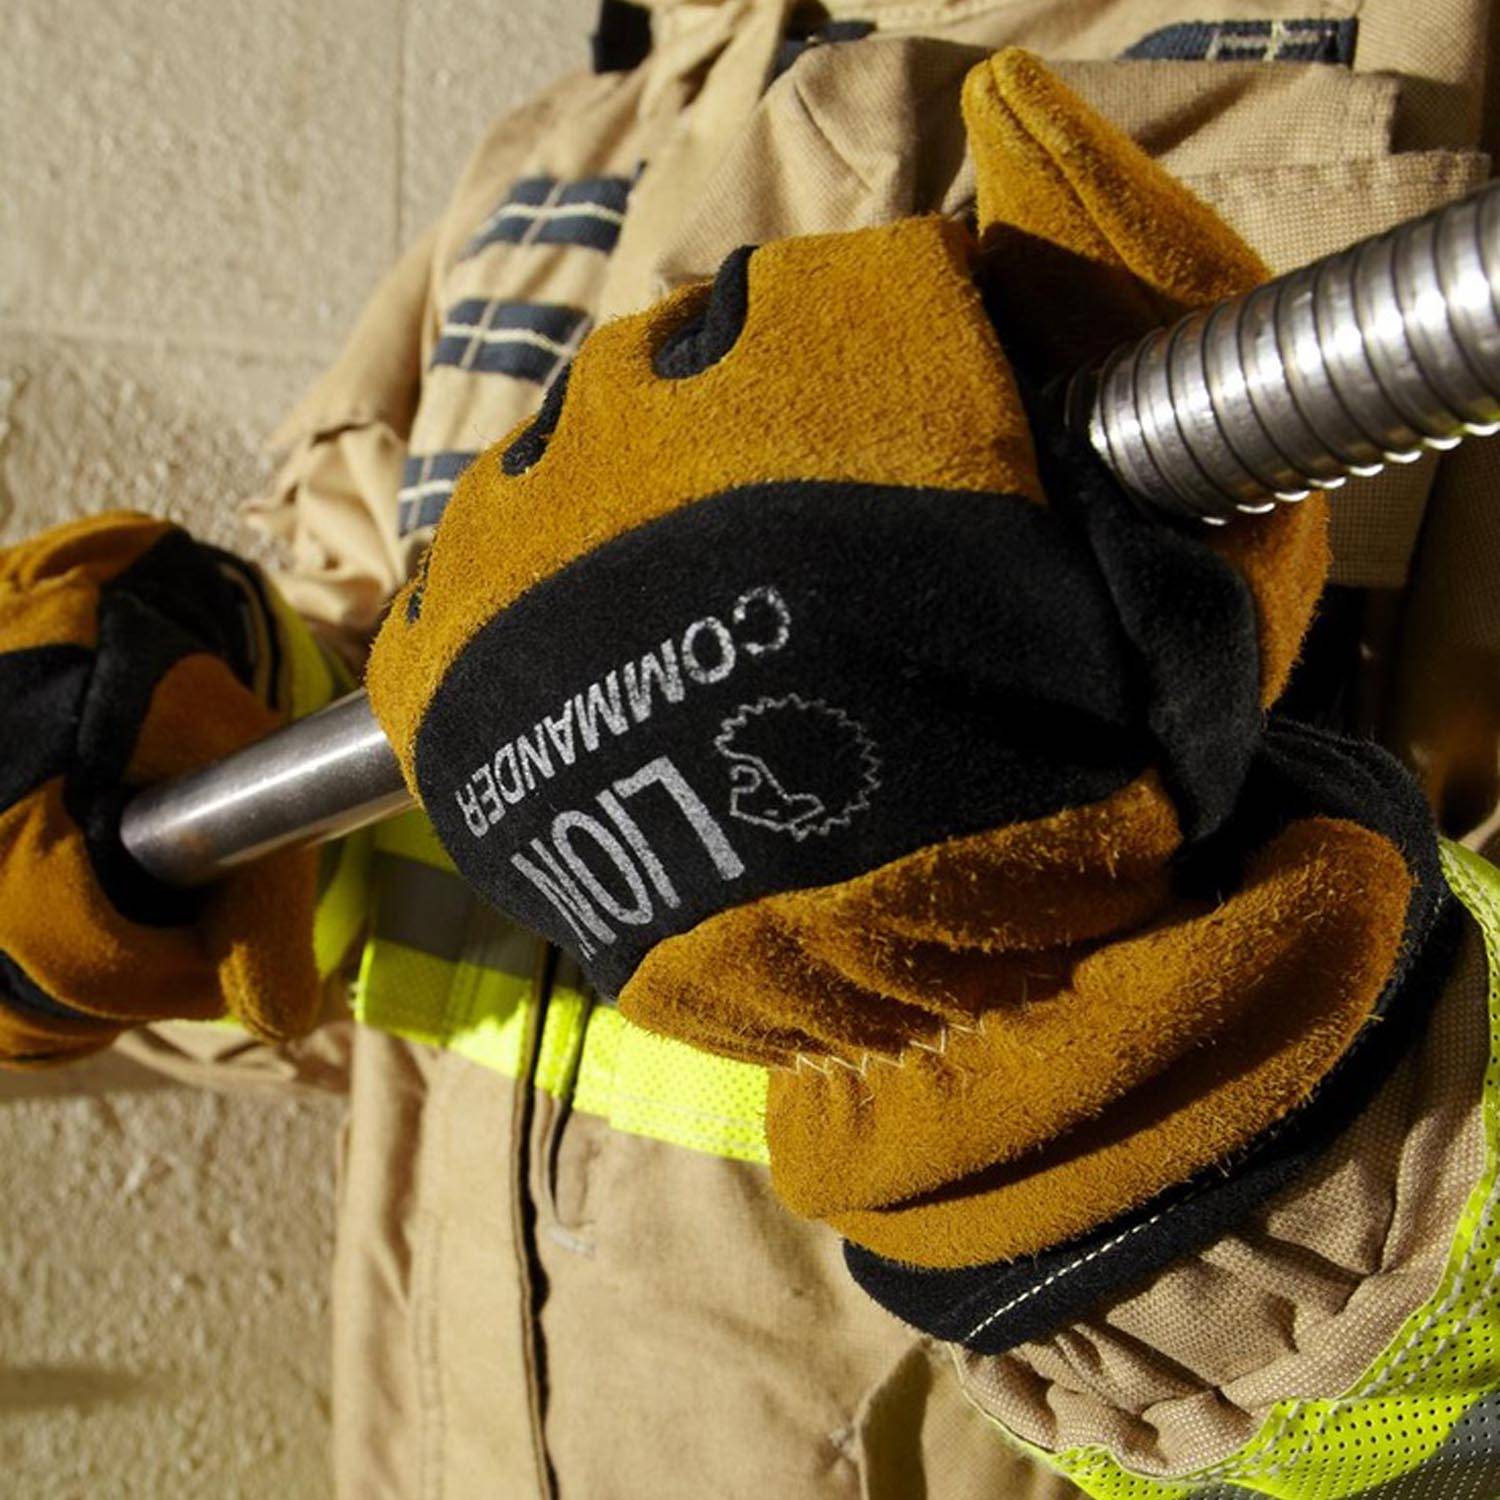 LION Commander NFPA Gauntlet Cadet Firefighting Gloves